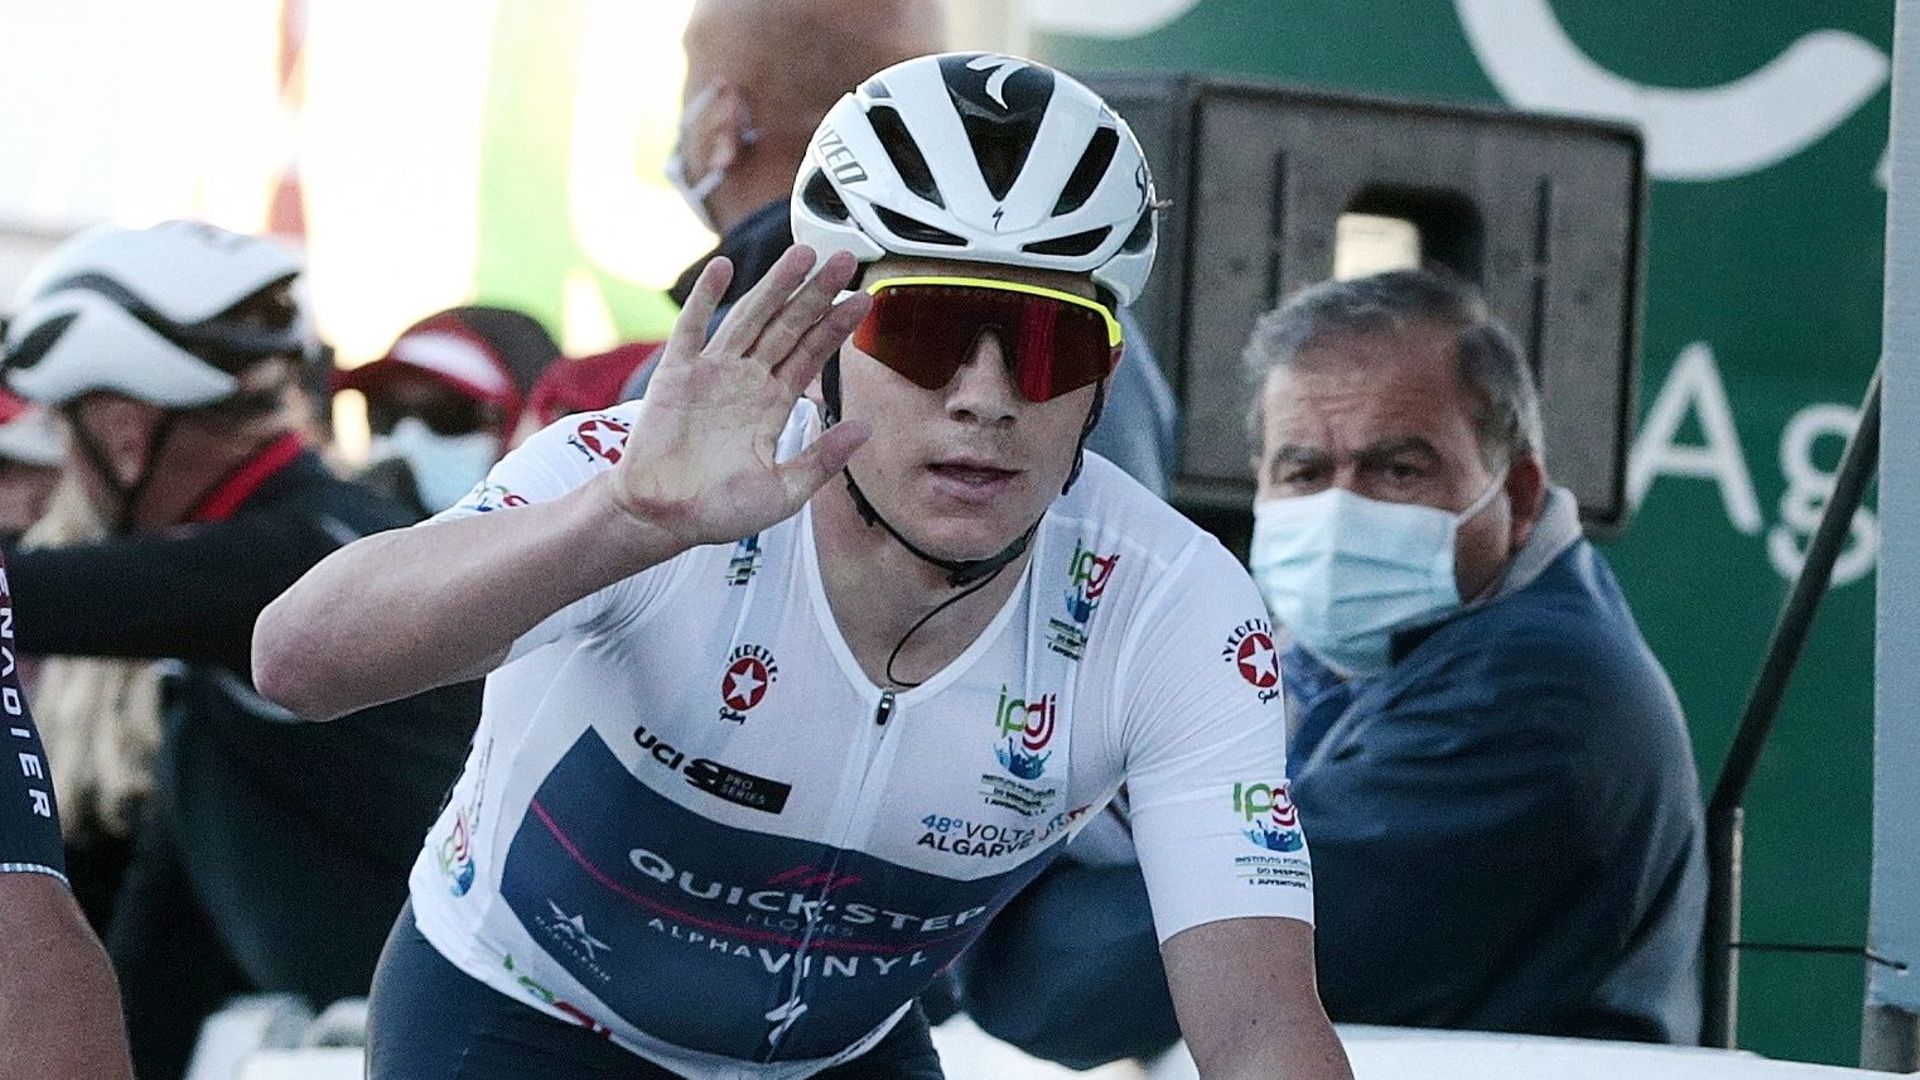 Cyclisme : Remco Evenepoel franchit la ligne de la 2ème étape du Tour d’Algarve, au Portugal. Il s’est classé 6ème au sommet de l’Alto da Fóia. Le coureur belge a indiqué après la course avoir "de bonnes sensations" avant le chrono décisif de samedi.